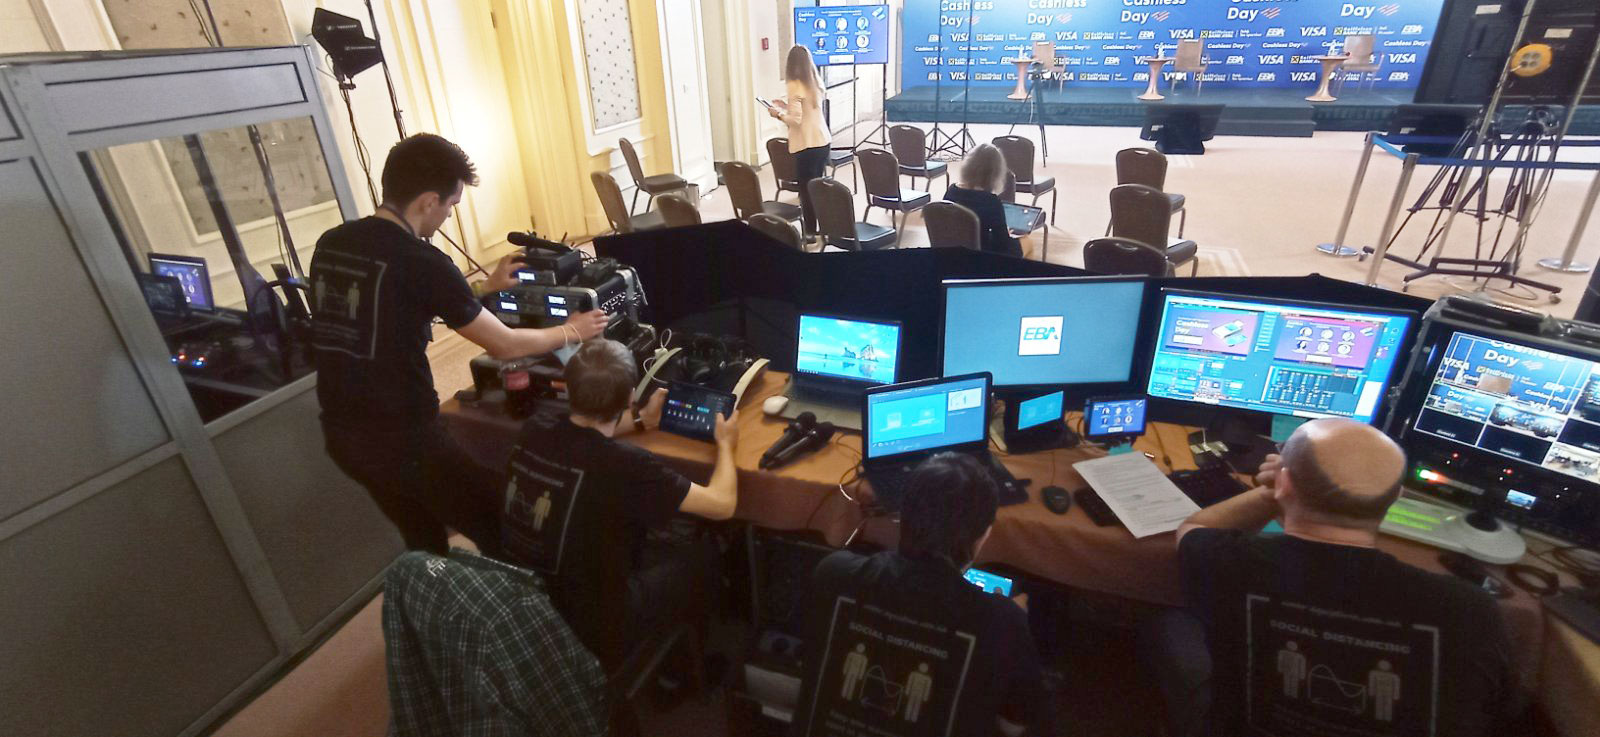 Организация онлайн трансляции для конференций и мероприятий. Киев, Одесса, Харьков, Львов, Днепр